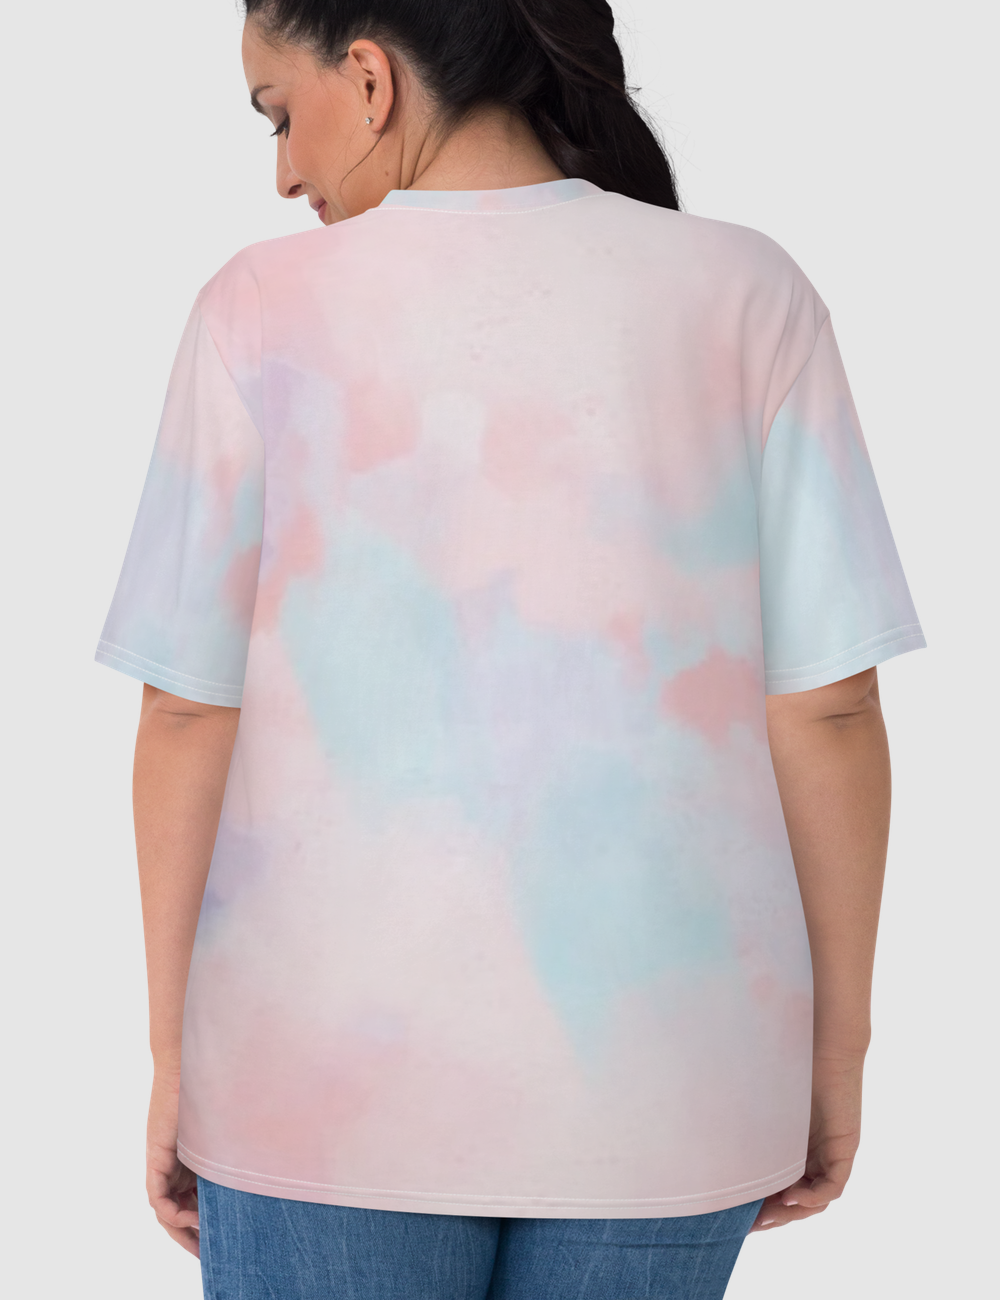 Abstract White Tie-Dye Women's T-Shirt OniTakai